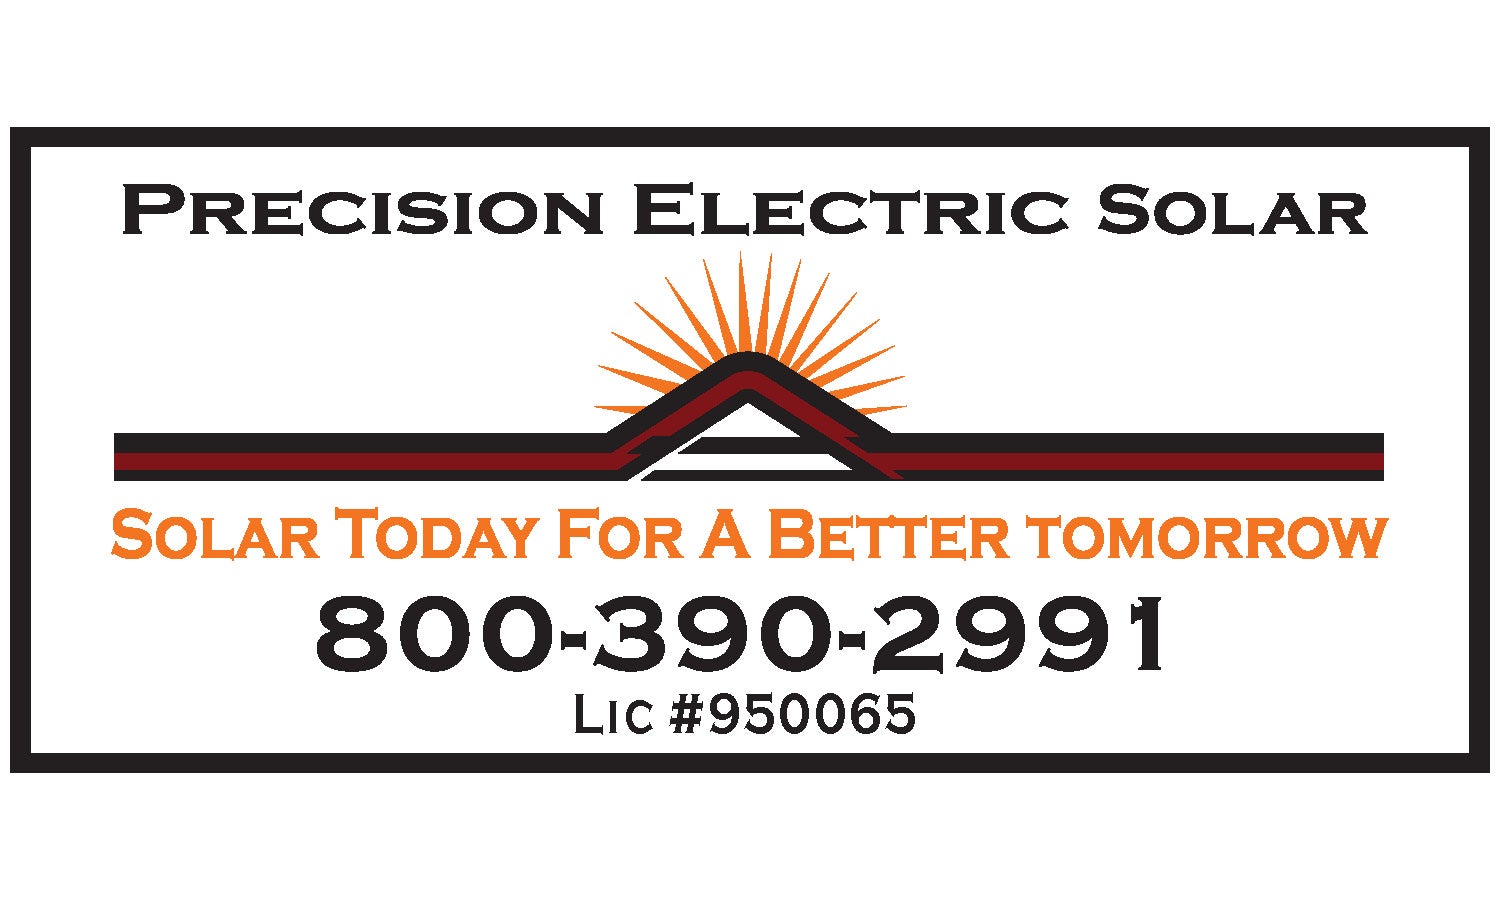 Precision Electric Solar Company